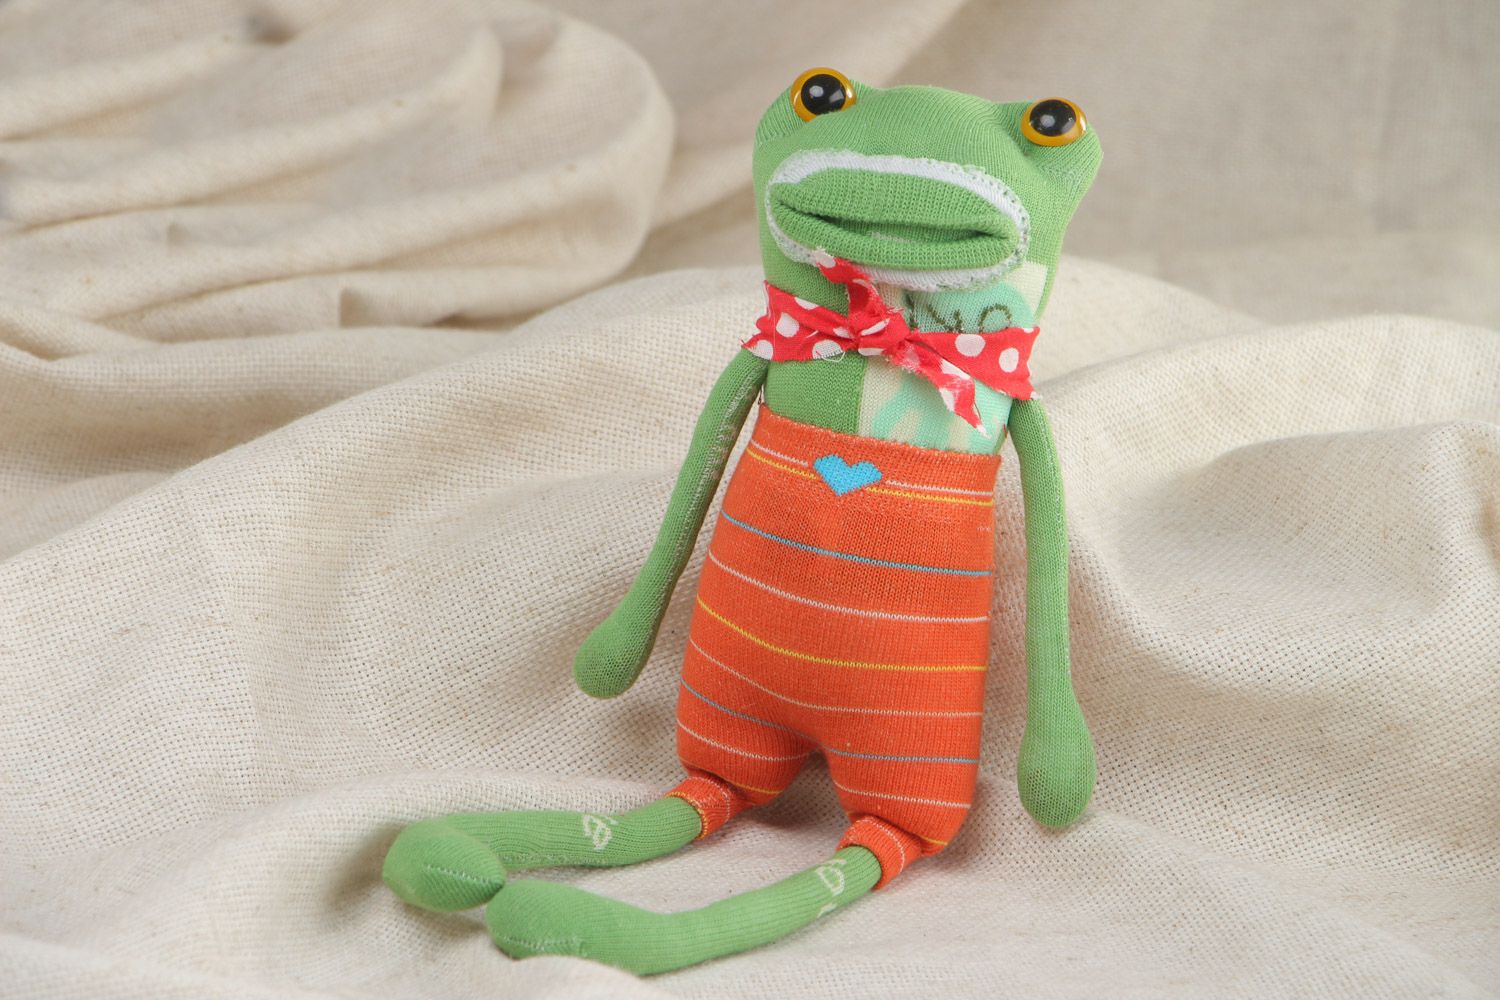 Joli jouet mou fait main en chaussettes grenouille verte cadeau pour enfant photo 5